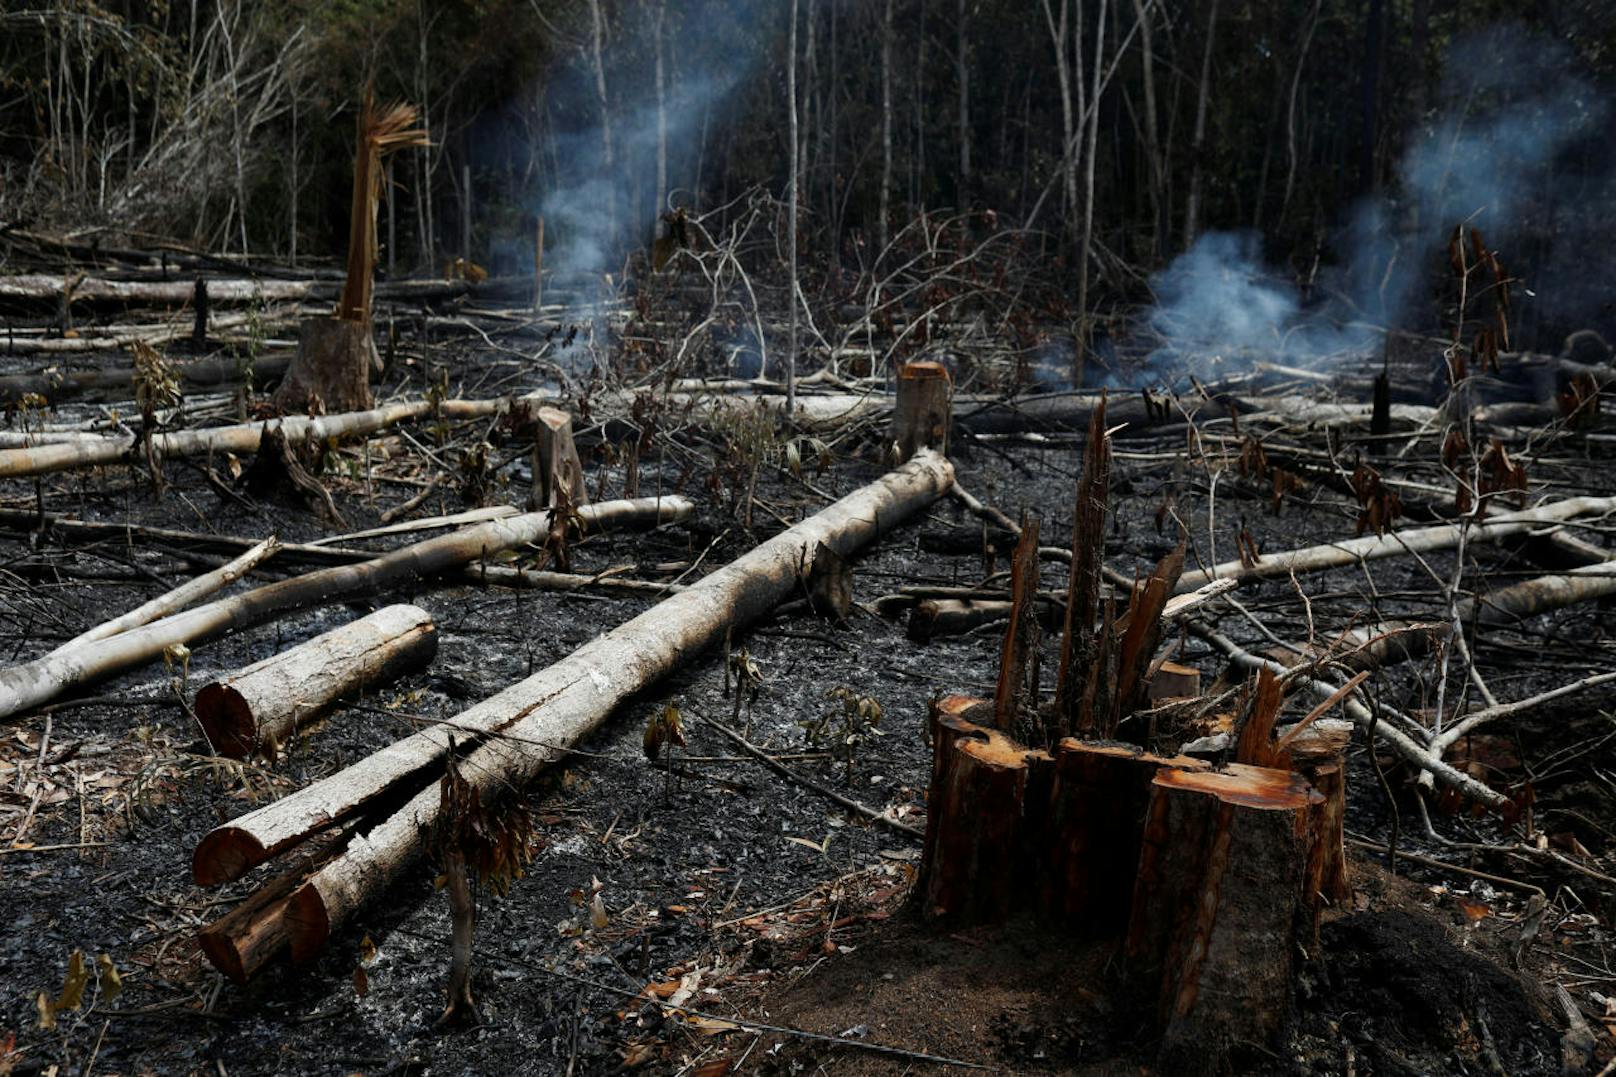 Der brasilianische Präsident Jair Bolsonaro beschuldigt Umweltschützer, die Brände gelegt zu haben.